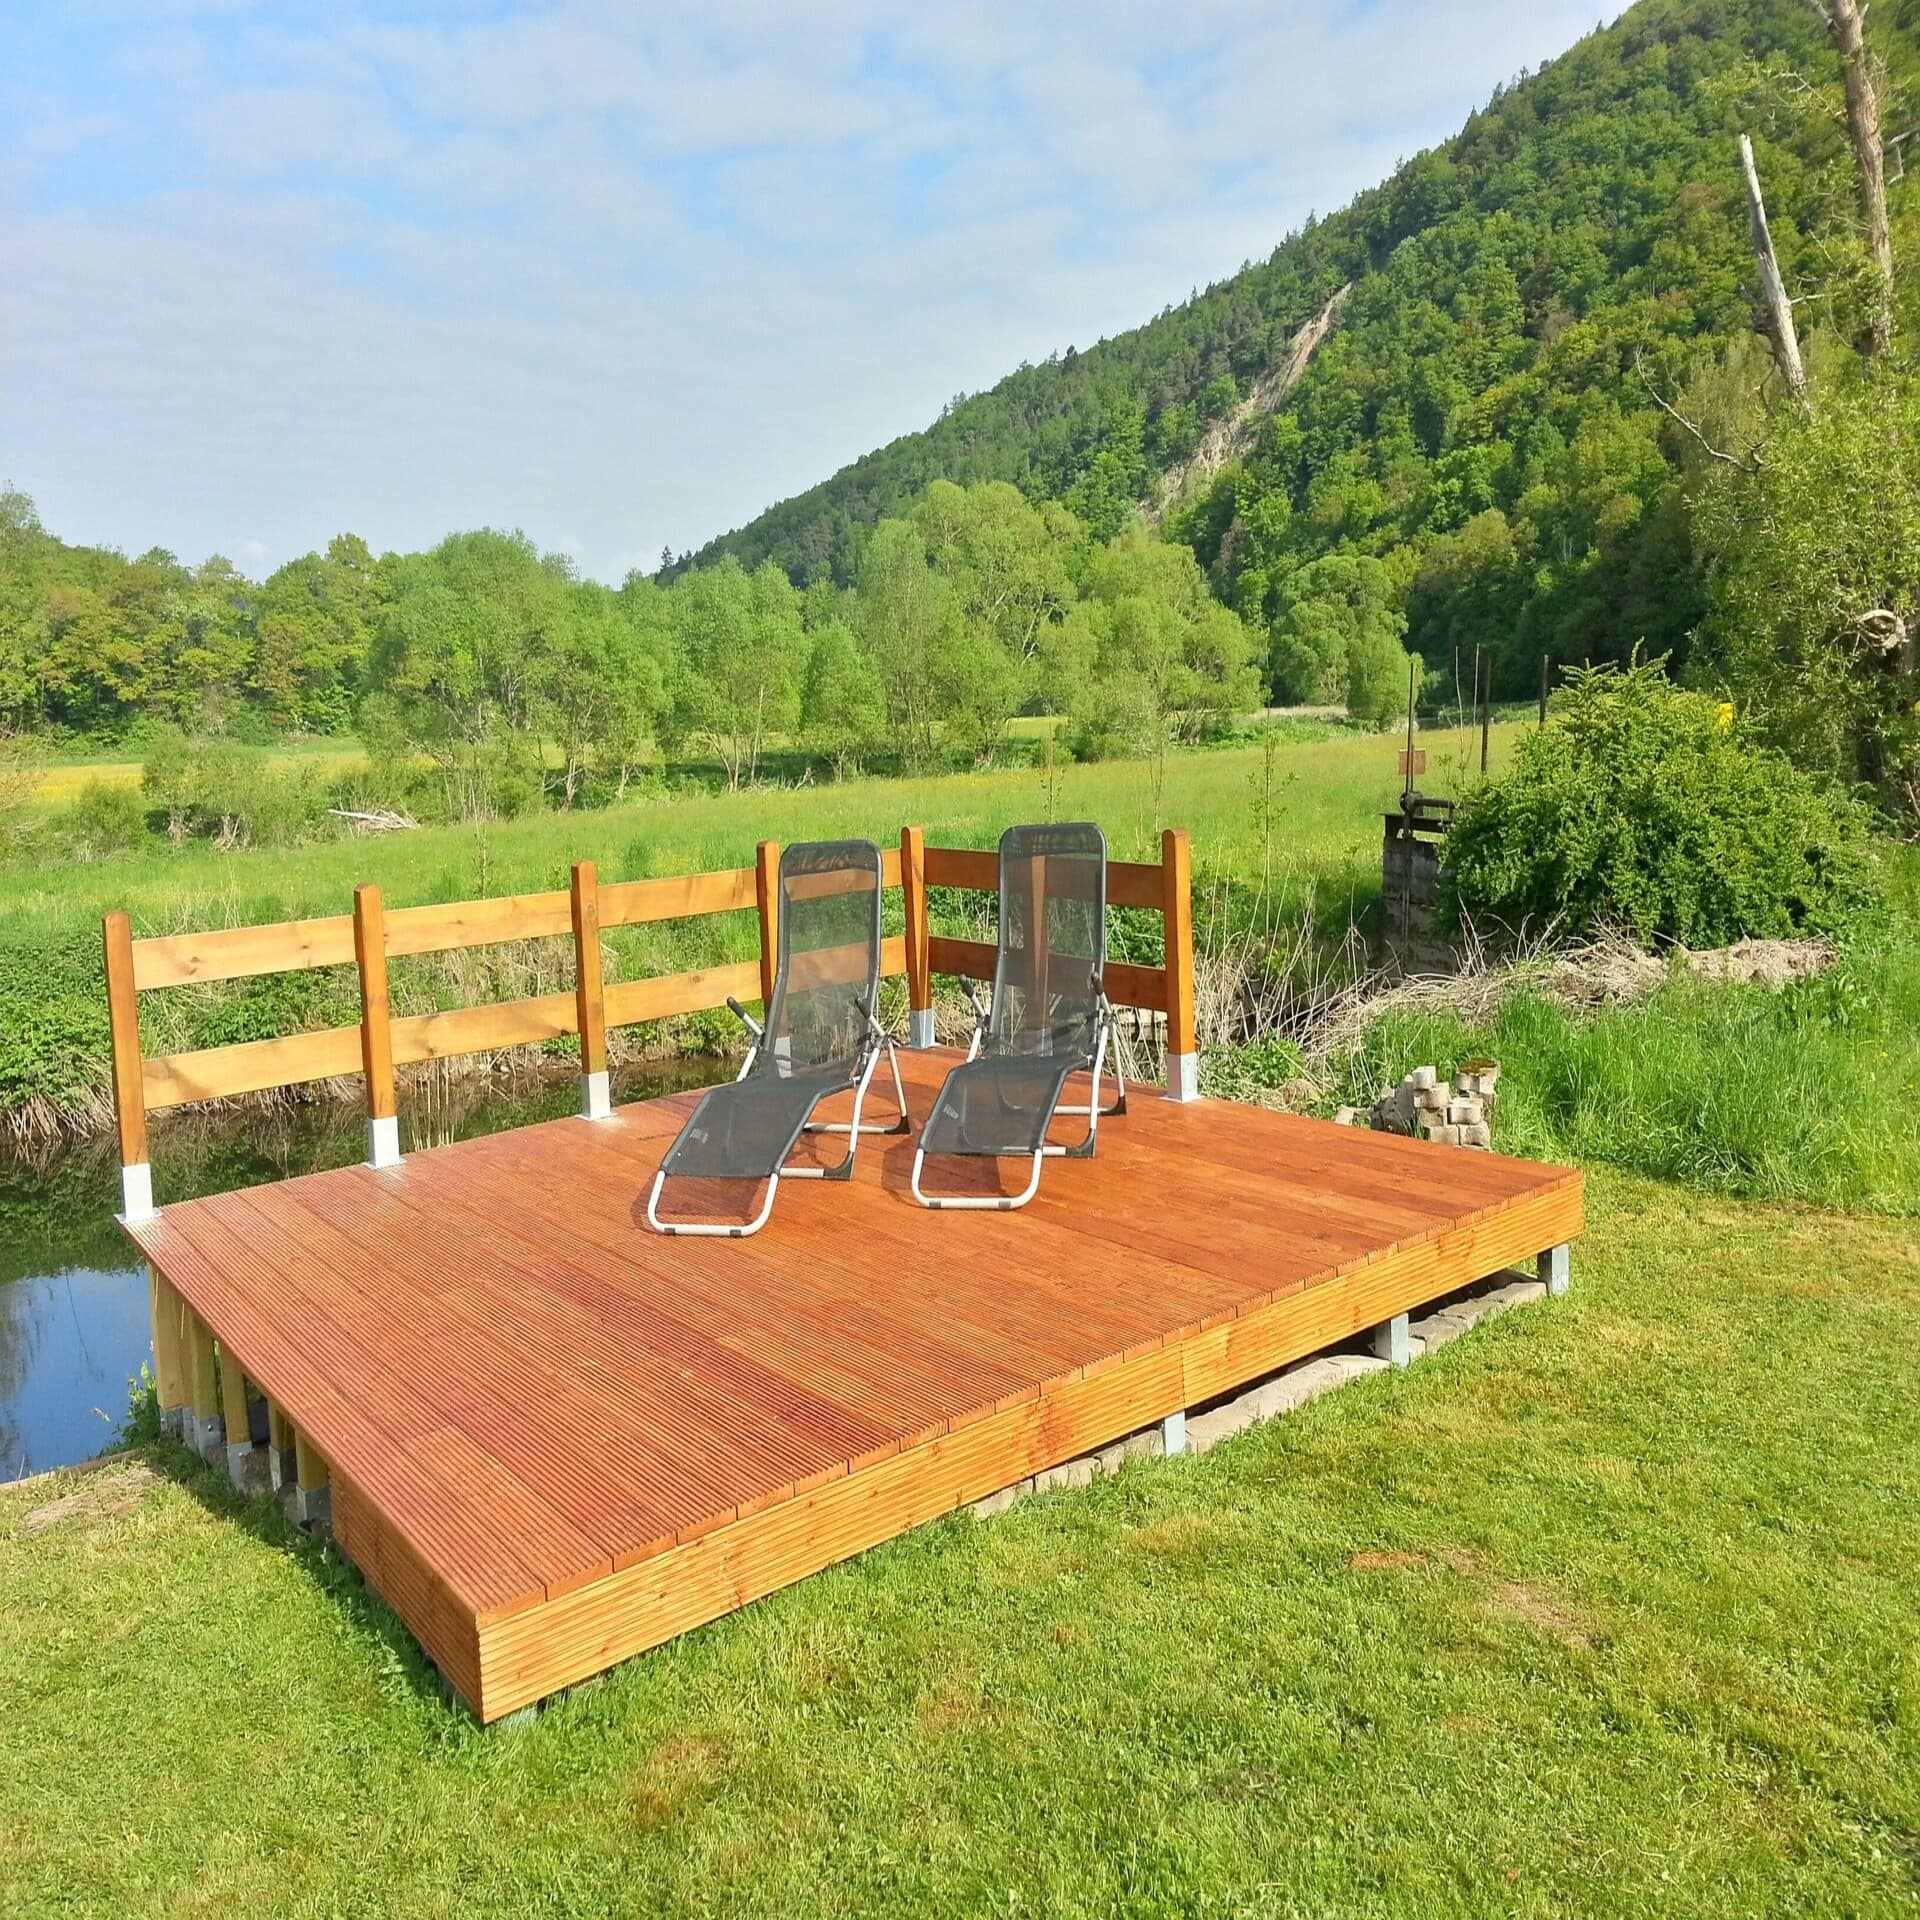 Holzdeck mit 2 Liegestühlen an einem kleinen Wasserlauf, dahinter die grüne Natur. Die Sonne scheint. 